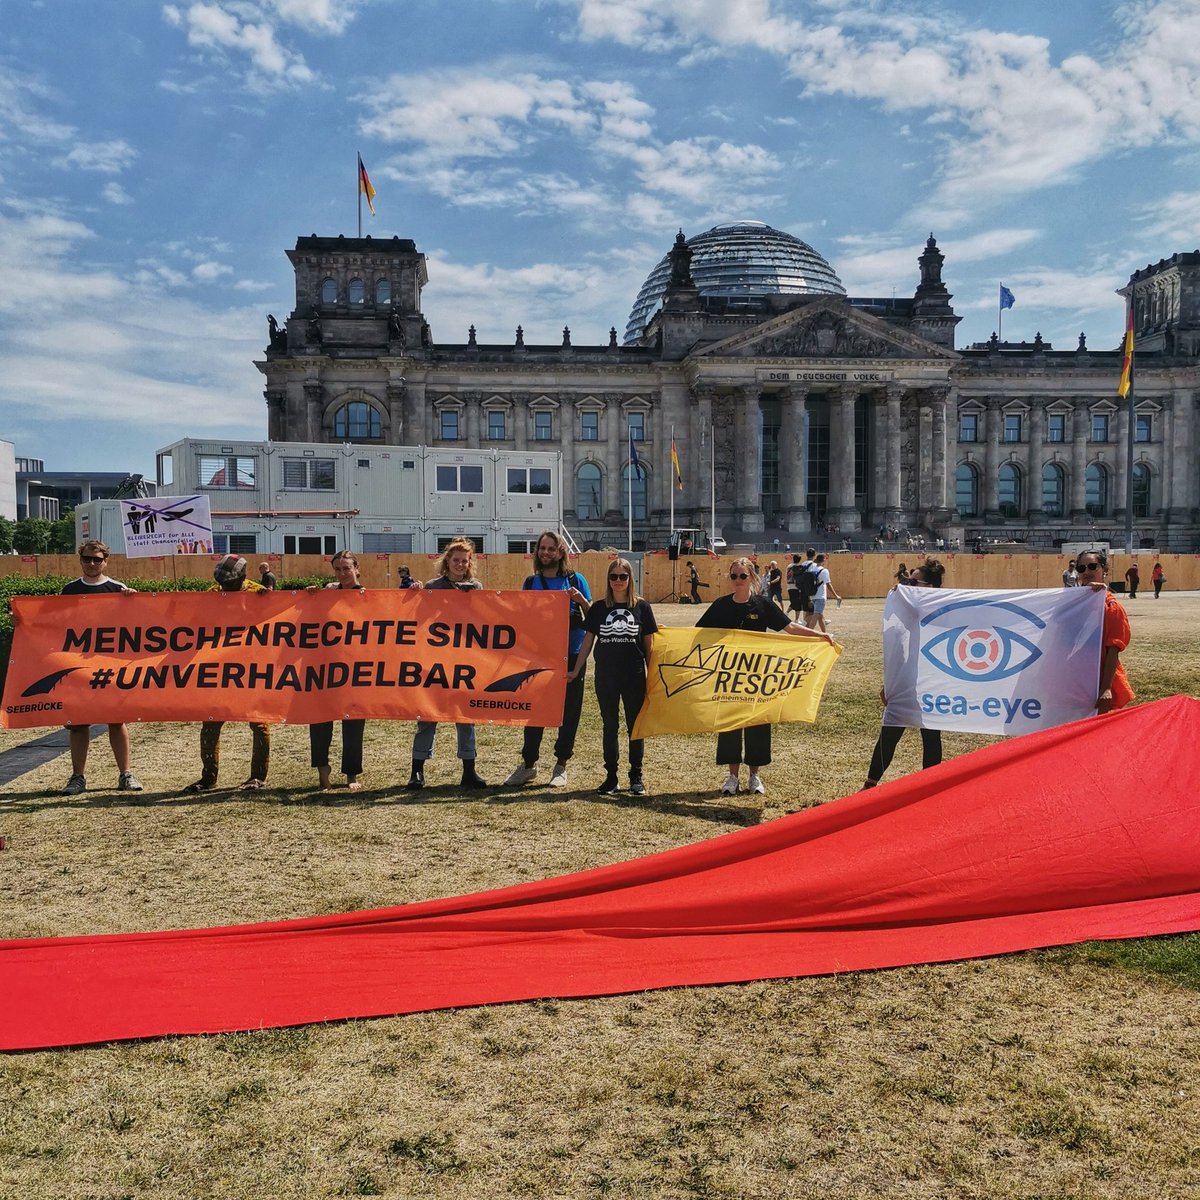 Heute haben mehrere Initiativen und Organisationen vor dem Bundestag gegen das #GEAS Reformvorhaben protestiert. Die geplante Verschärfung des Recht auf #Asyl verstößt gegen die #Menschenrechte und überschreitet eine Rote Linie!
#KeinAsylkompromiss #b0706